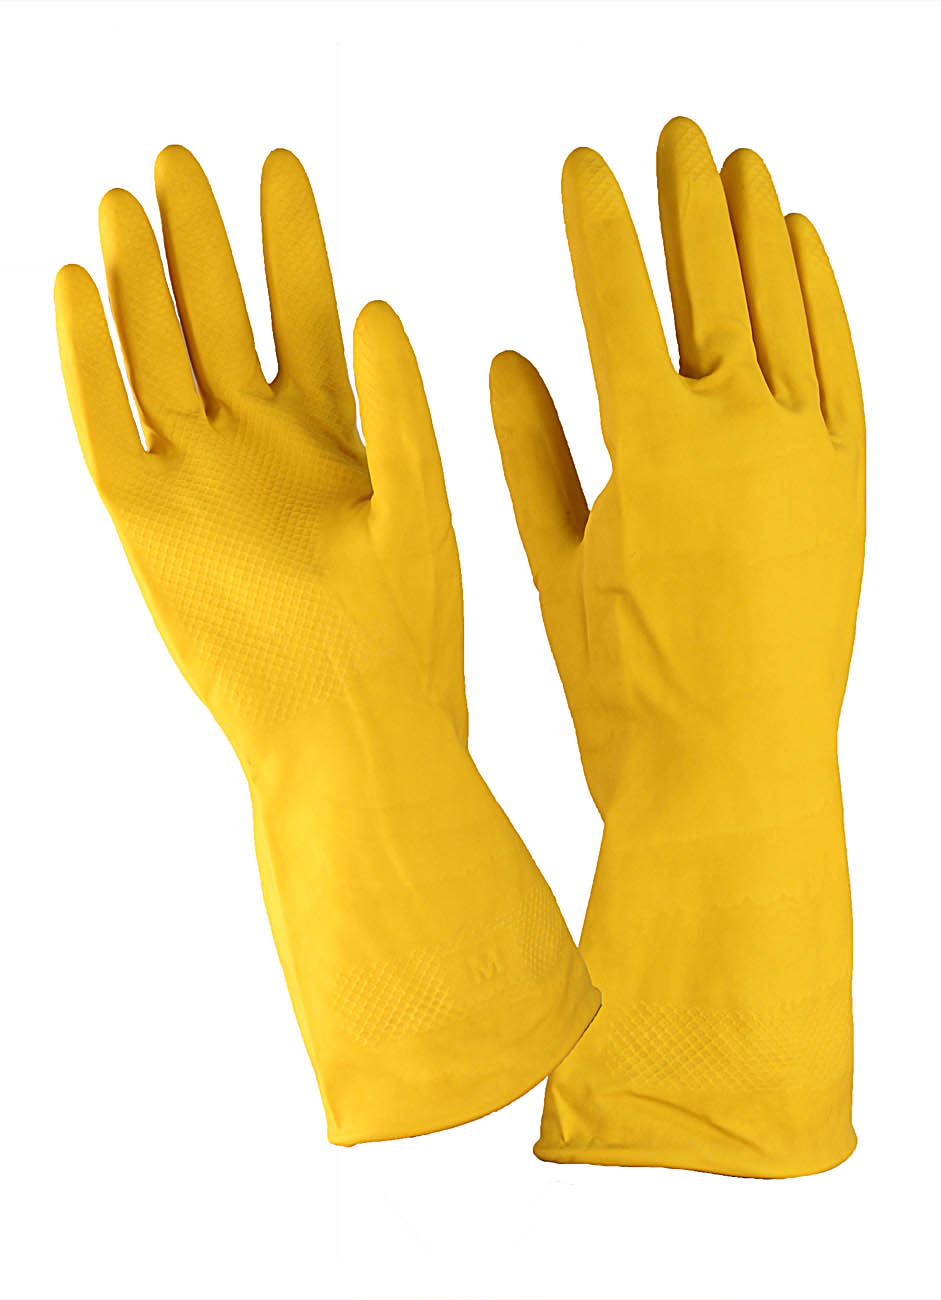 Перчатки хоз. латексные Для деликатной уборки с х/б напылением размер S желтые A.D.M.